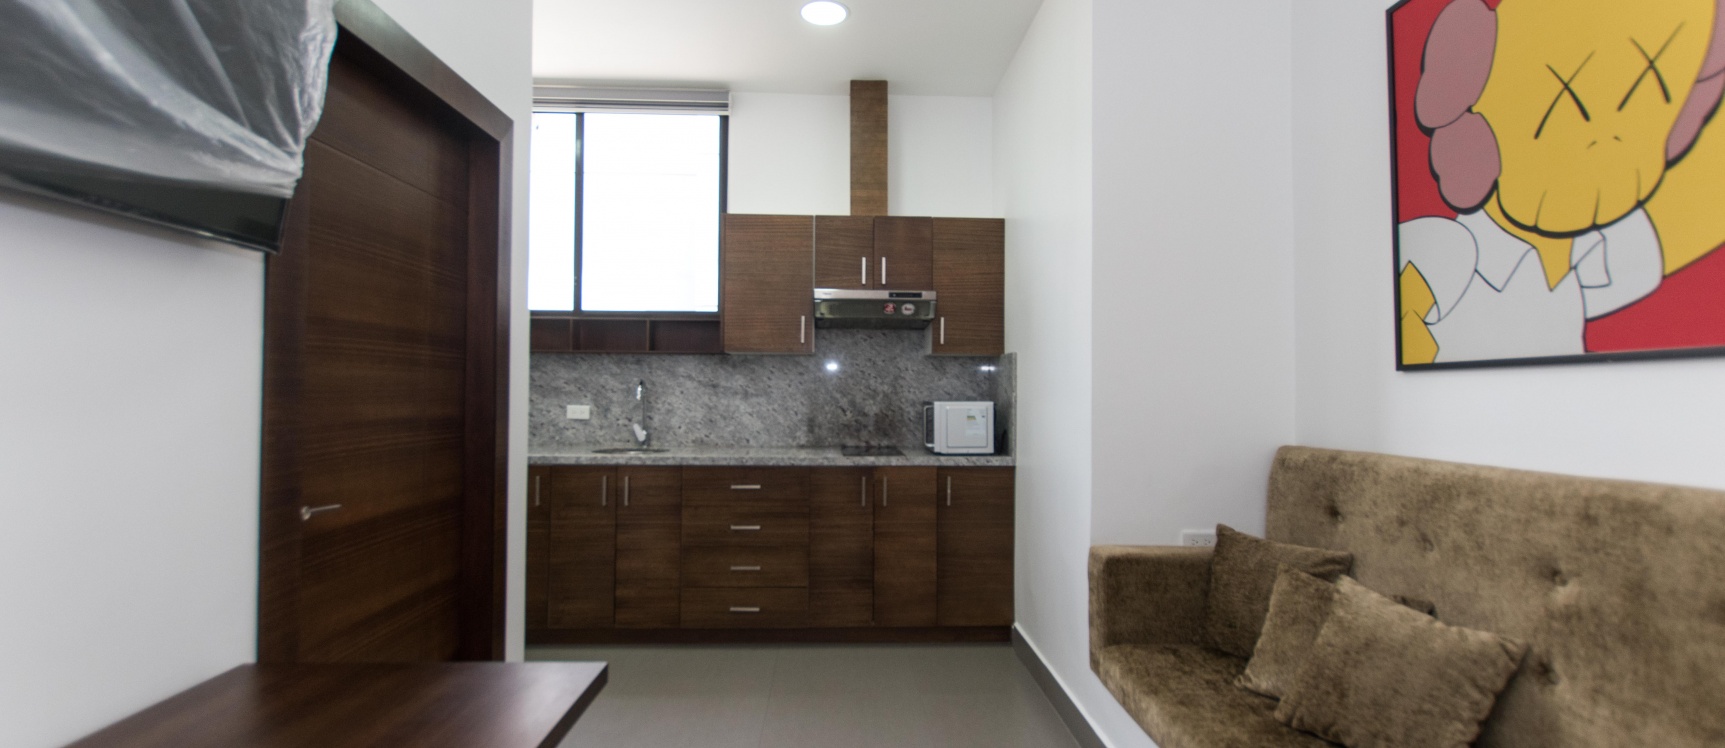 GeoBienes - Suite amoblada en alquiler en Calle la Moderna, Samborondón - Plusvalia Guayaquil Casas de venta y alquiler Inmobiliaria Ecuador